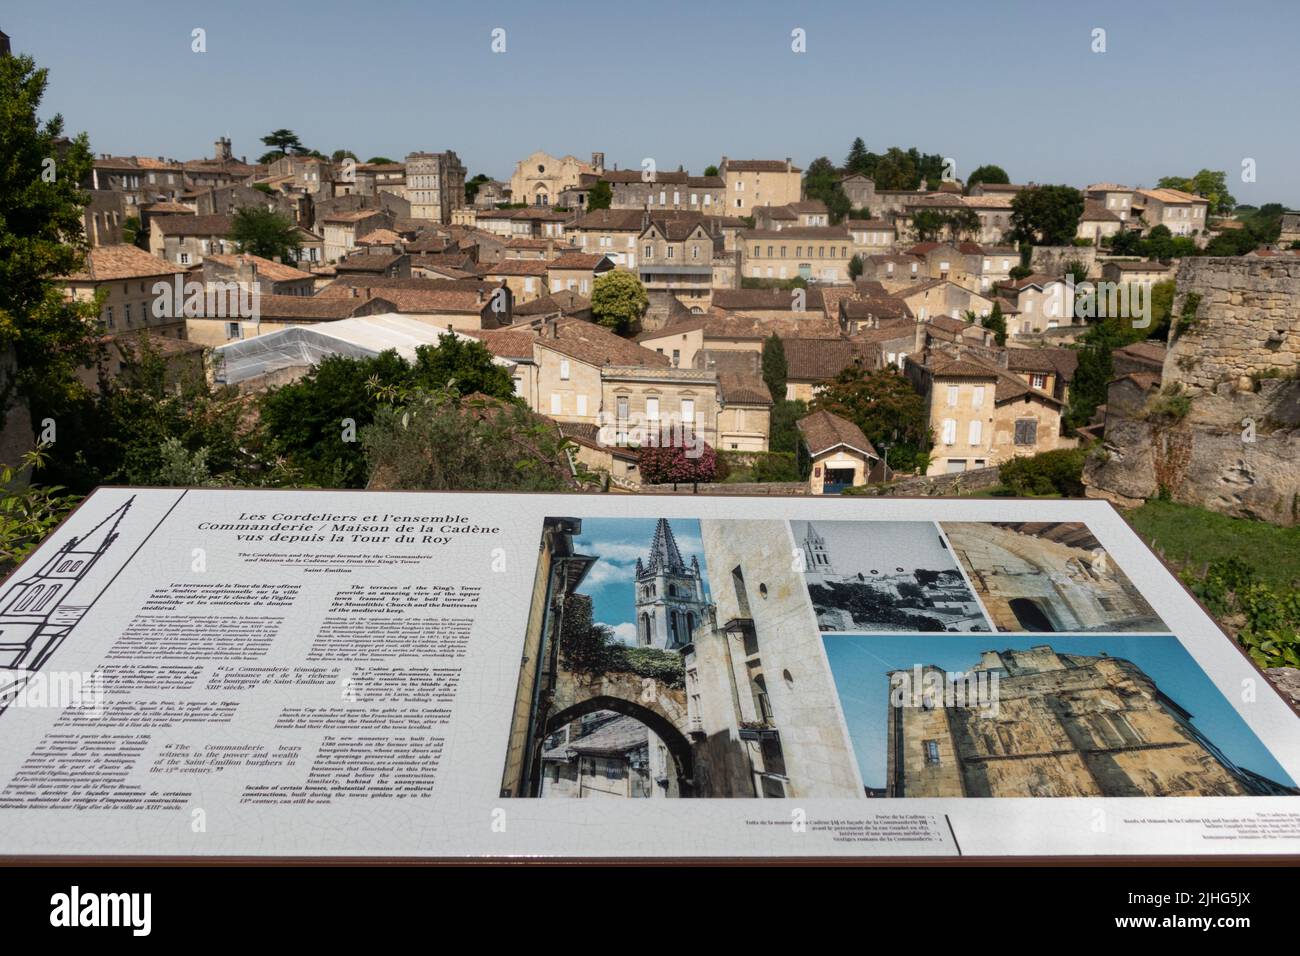 Informationstafel mit Blick auf die Terrassen vom Turm des Roy, auch bekannt als der Königsturm oder Kings Keep n Saint-Émilion France Stockfoto